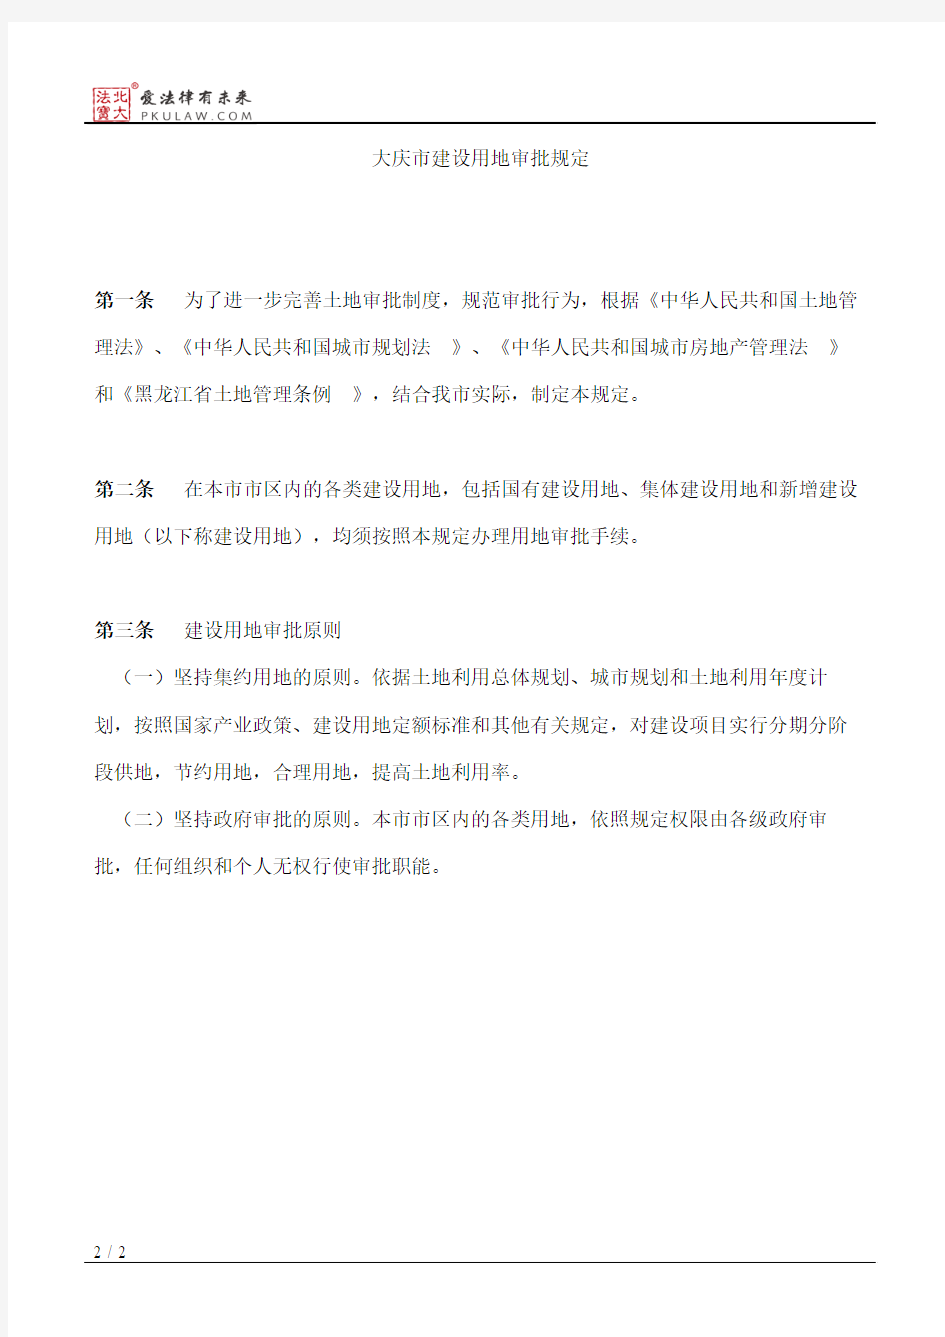 大庆市人民政府关于印发《大庆市建设用地审批规定》的通知